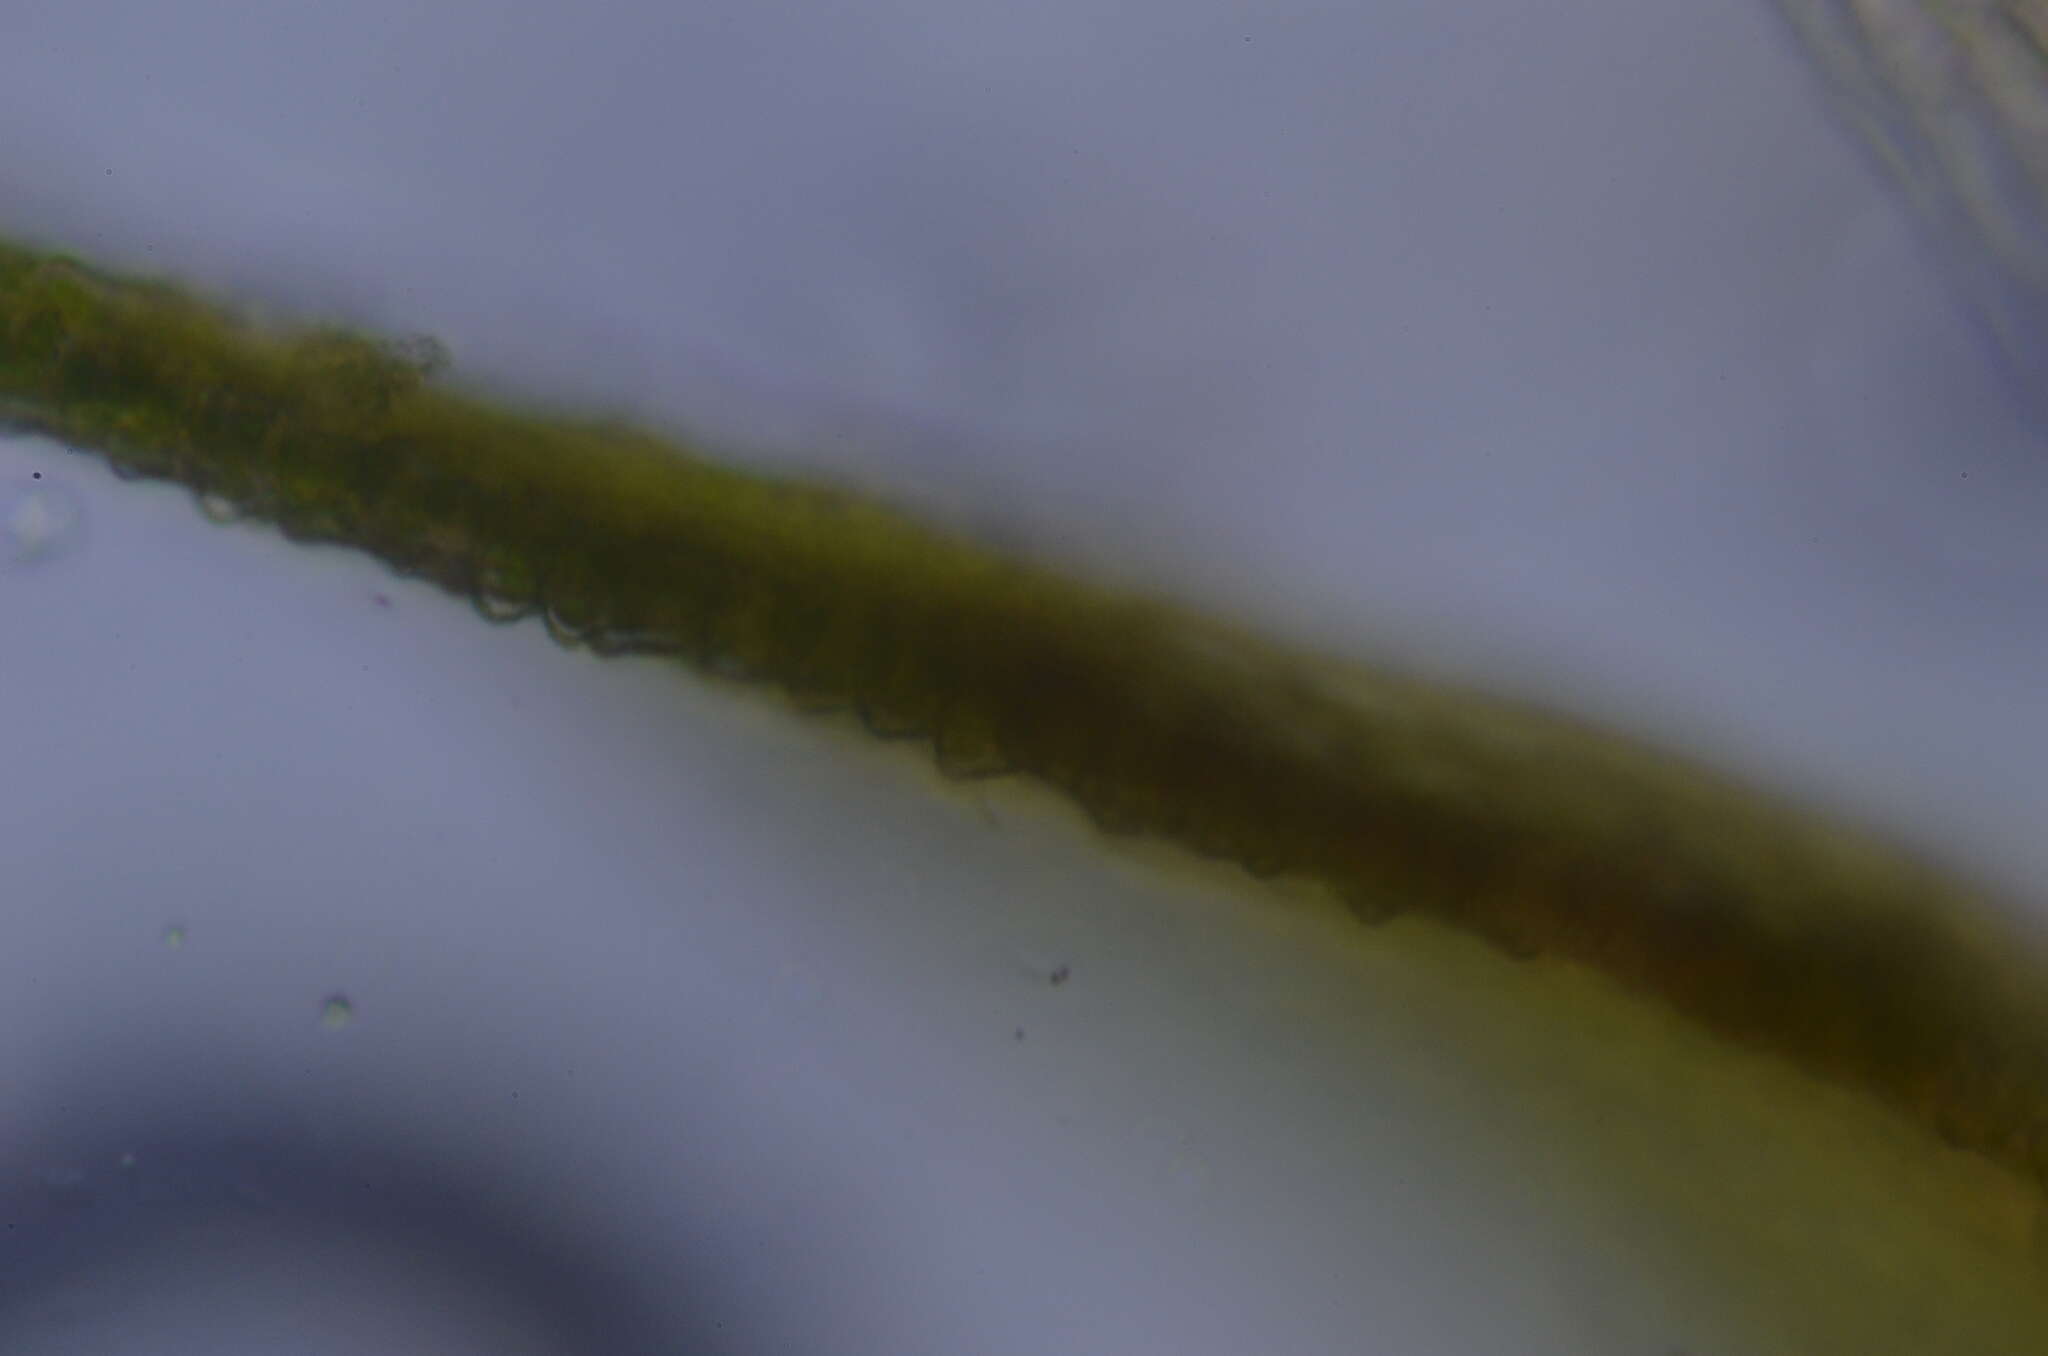 Image of pseudoleskea moss